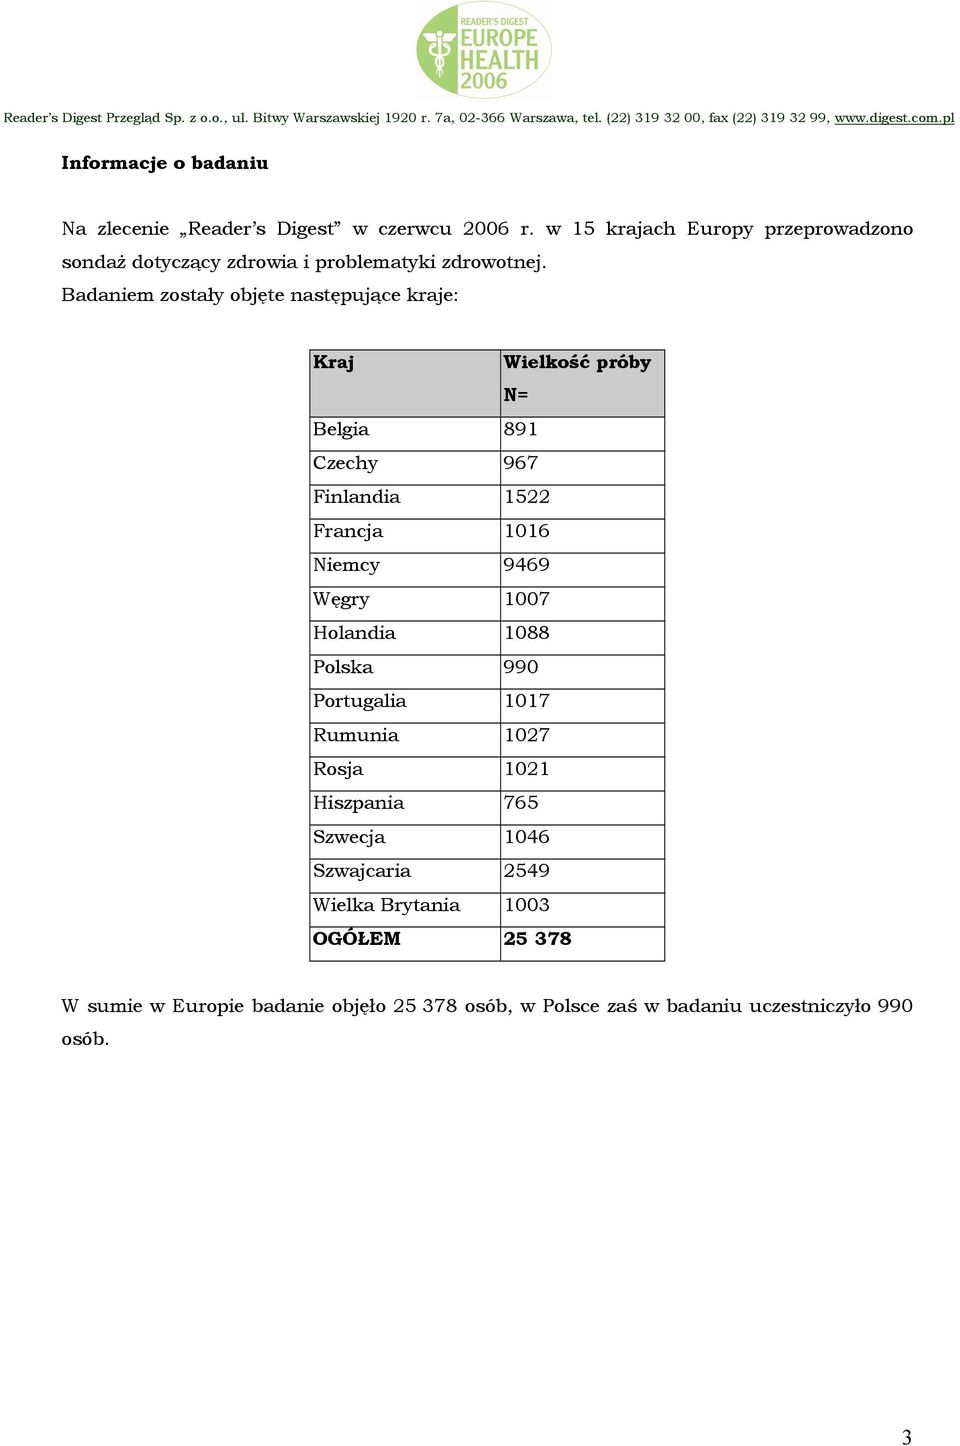 Badaniem zostały objęte następujące kraje: Kraj Wielkość próby N= Belgia 891 Czechy 967 Finlandia 1522 Francja 1016 Niemcy 9469